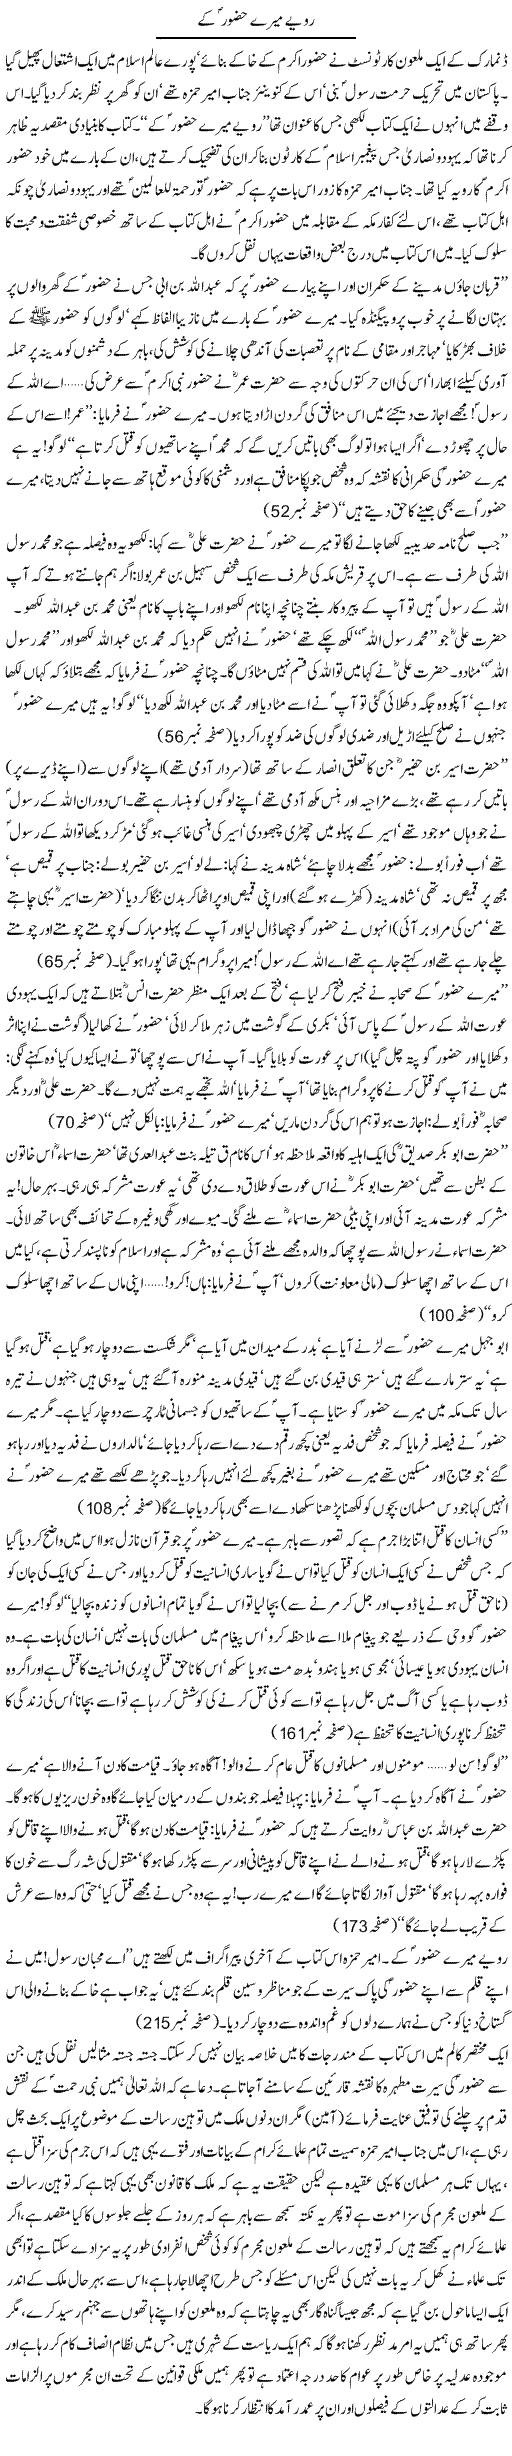 Toheen Risalat Express Column Asadullah Ghalib 27 January 2011